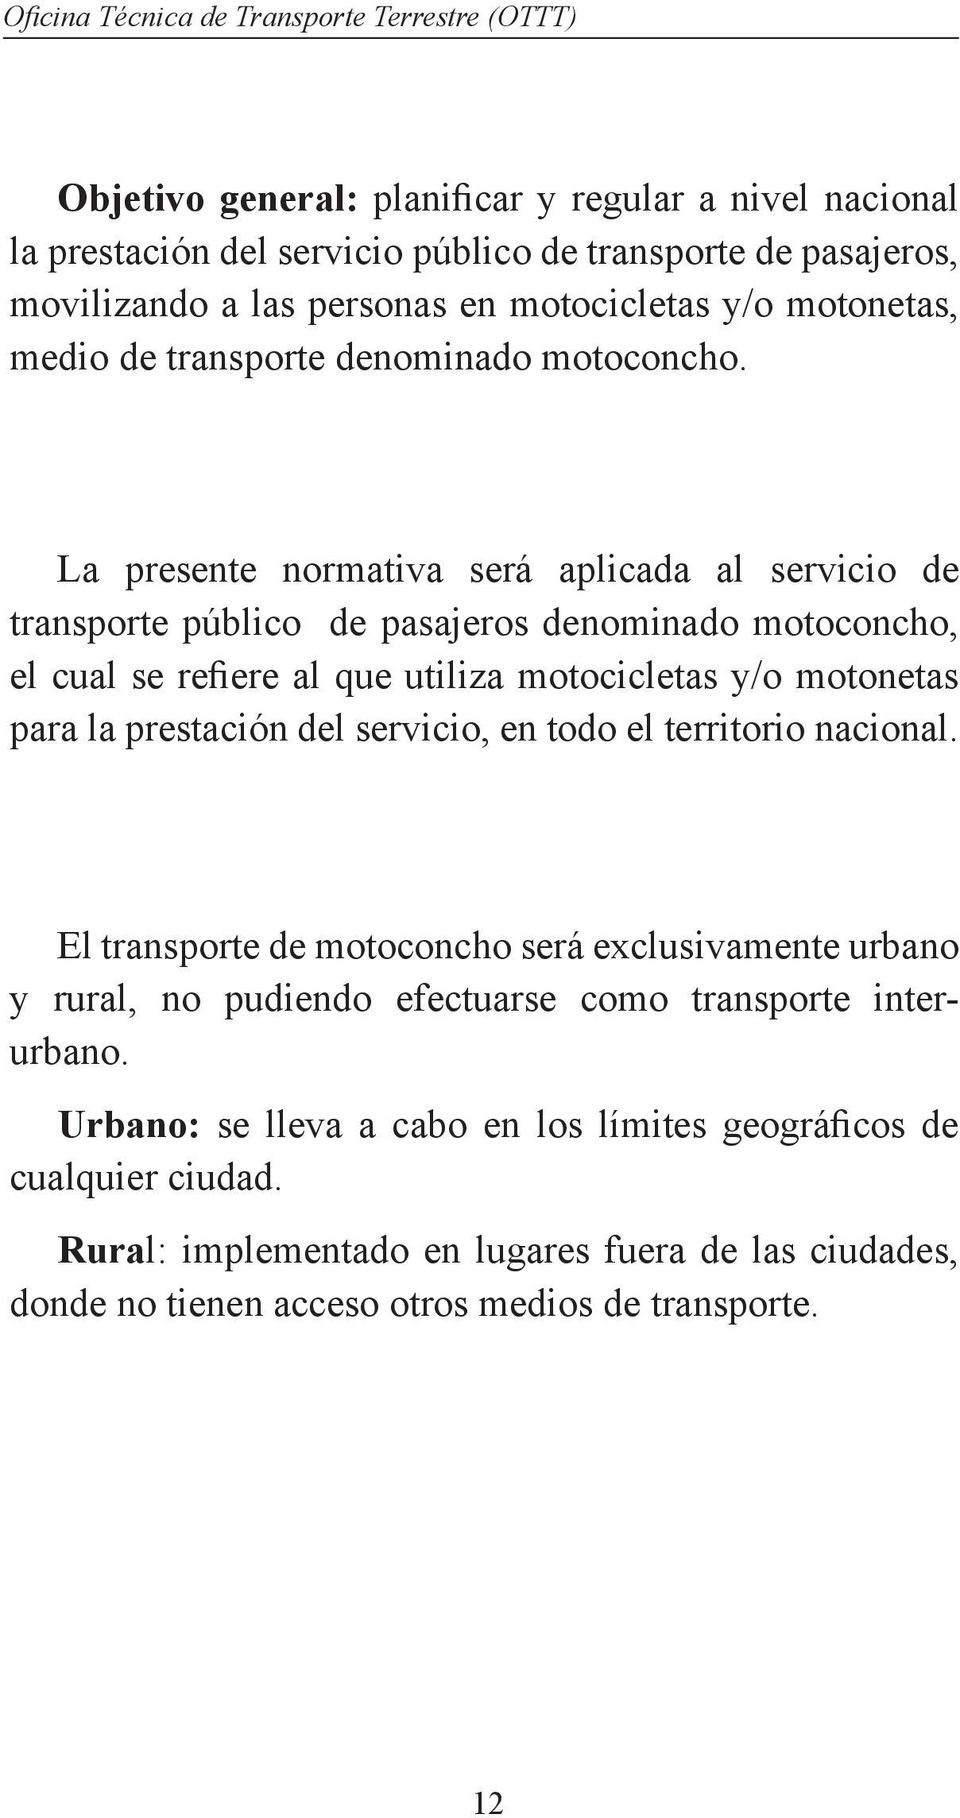 La presente normativa será aplicada al servicio de transporte público de pasajeros denominado motoconcho, el cual se refiere al que utiliza motocicletas y/o motonetas para la prestación del